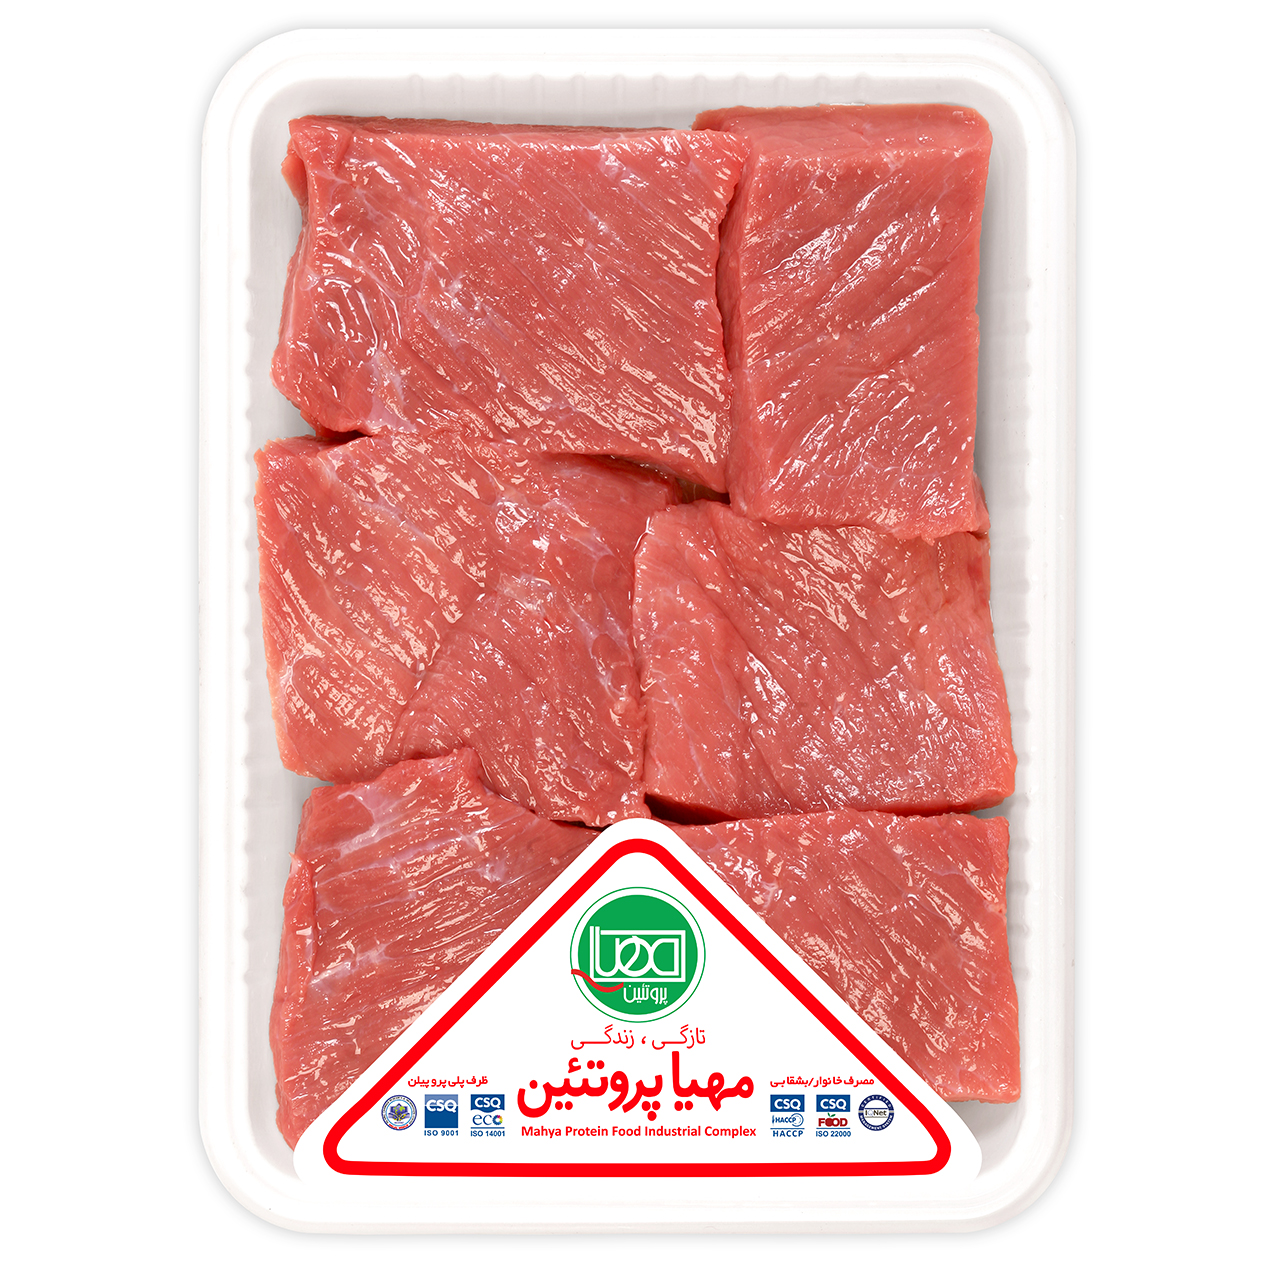 گوشت گوساله خورشتی مهیا پروتئین - 800 گرم